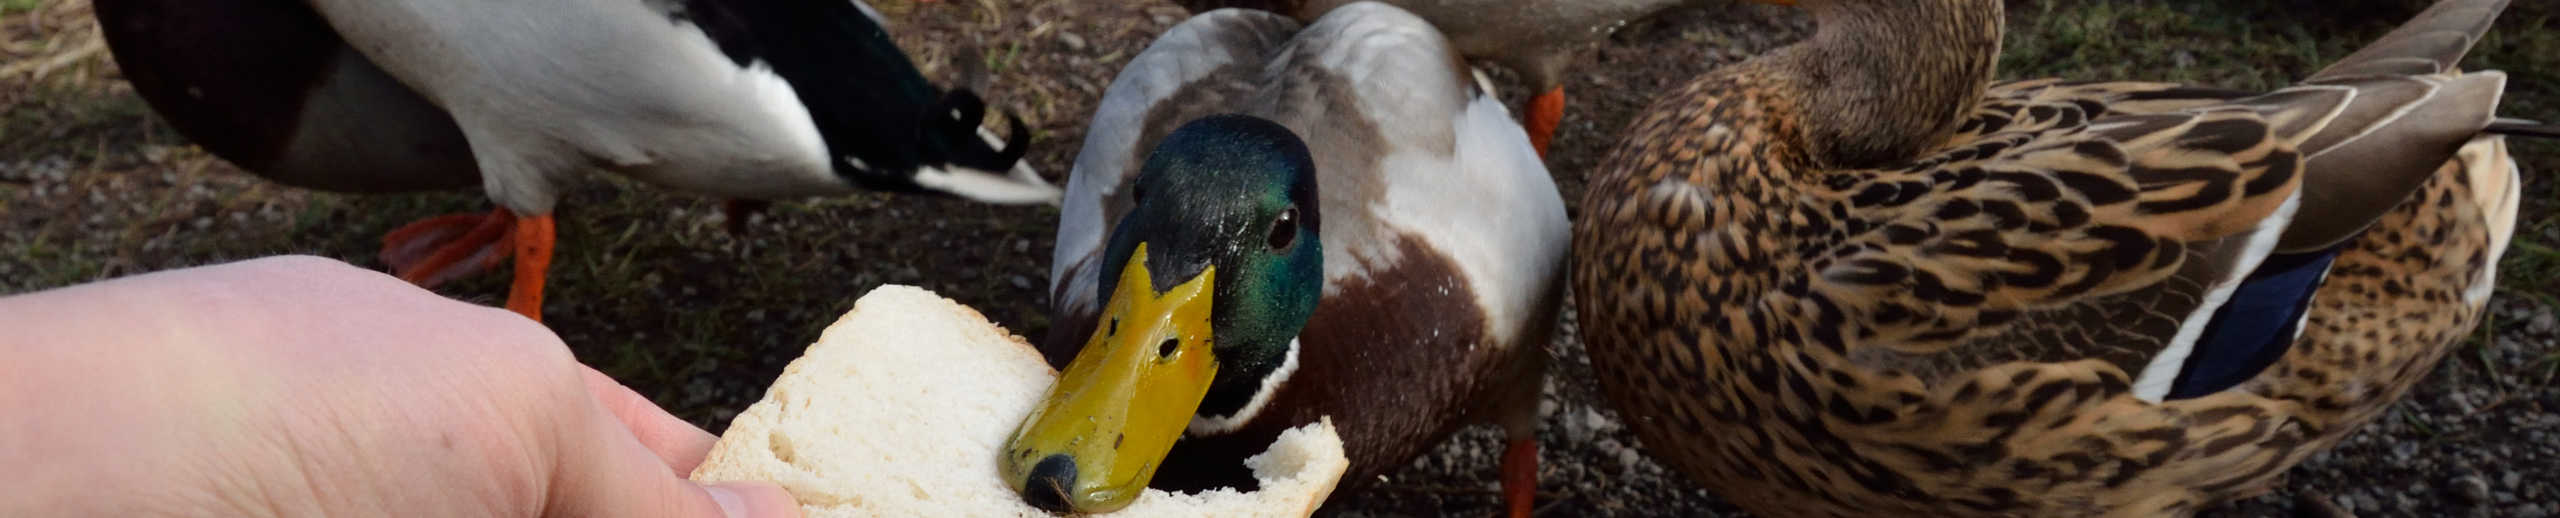 Enten werden mit einer Scheibe Brot gefüttert